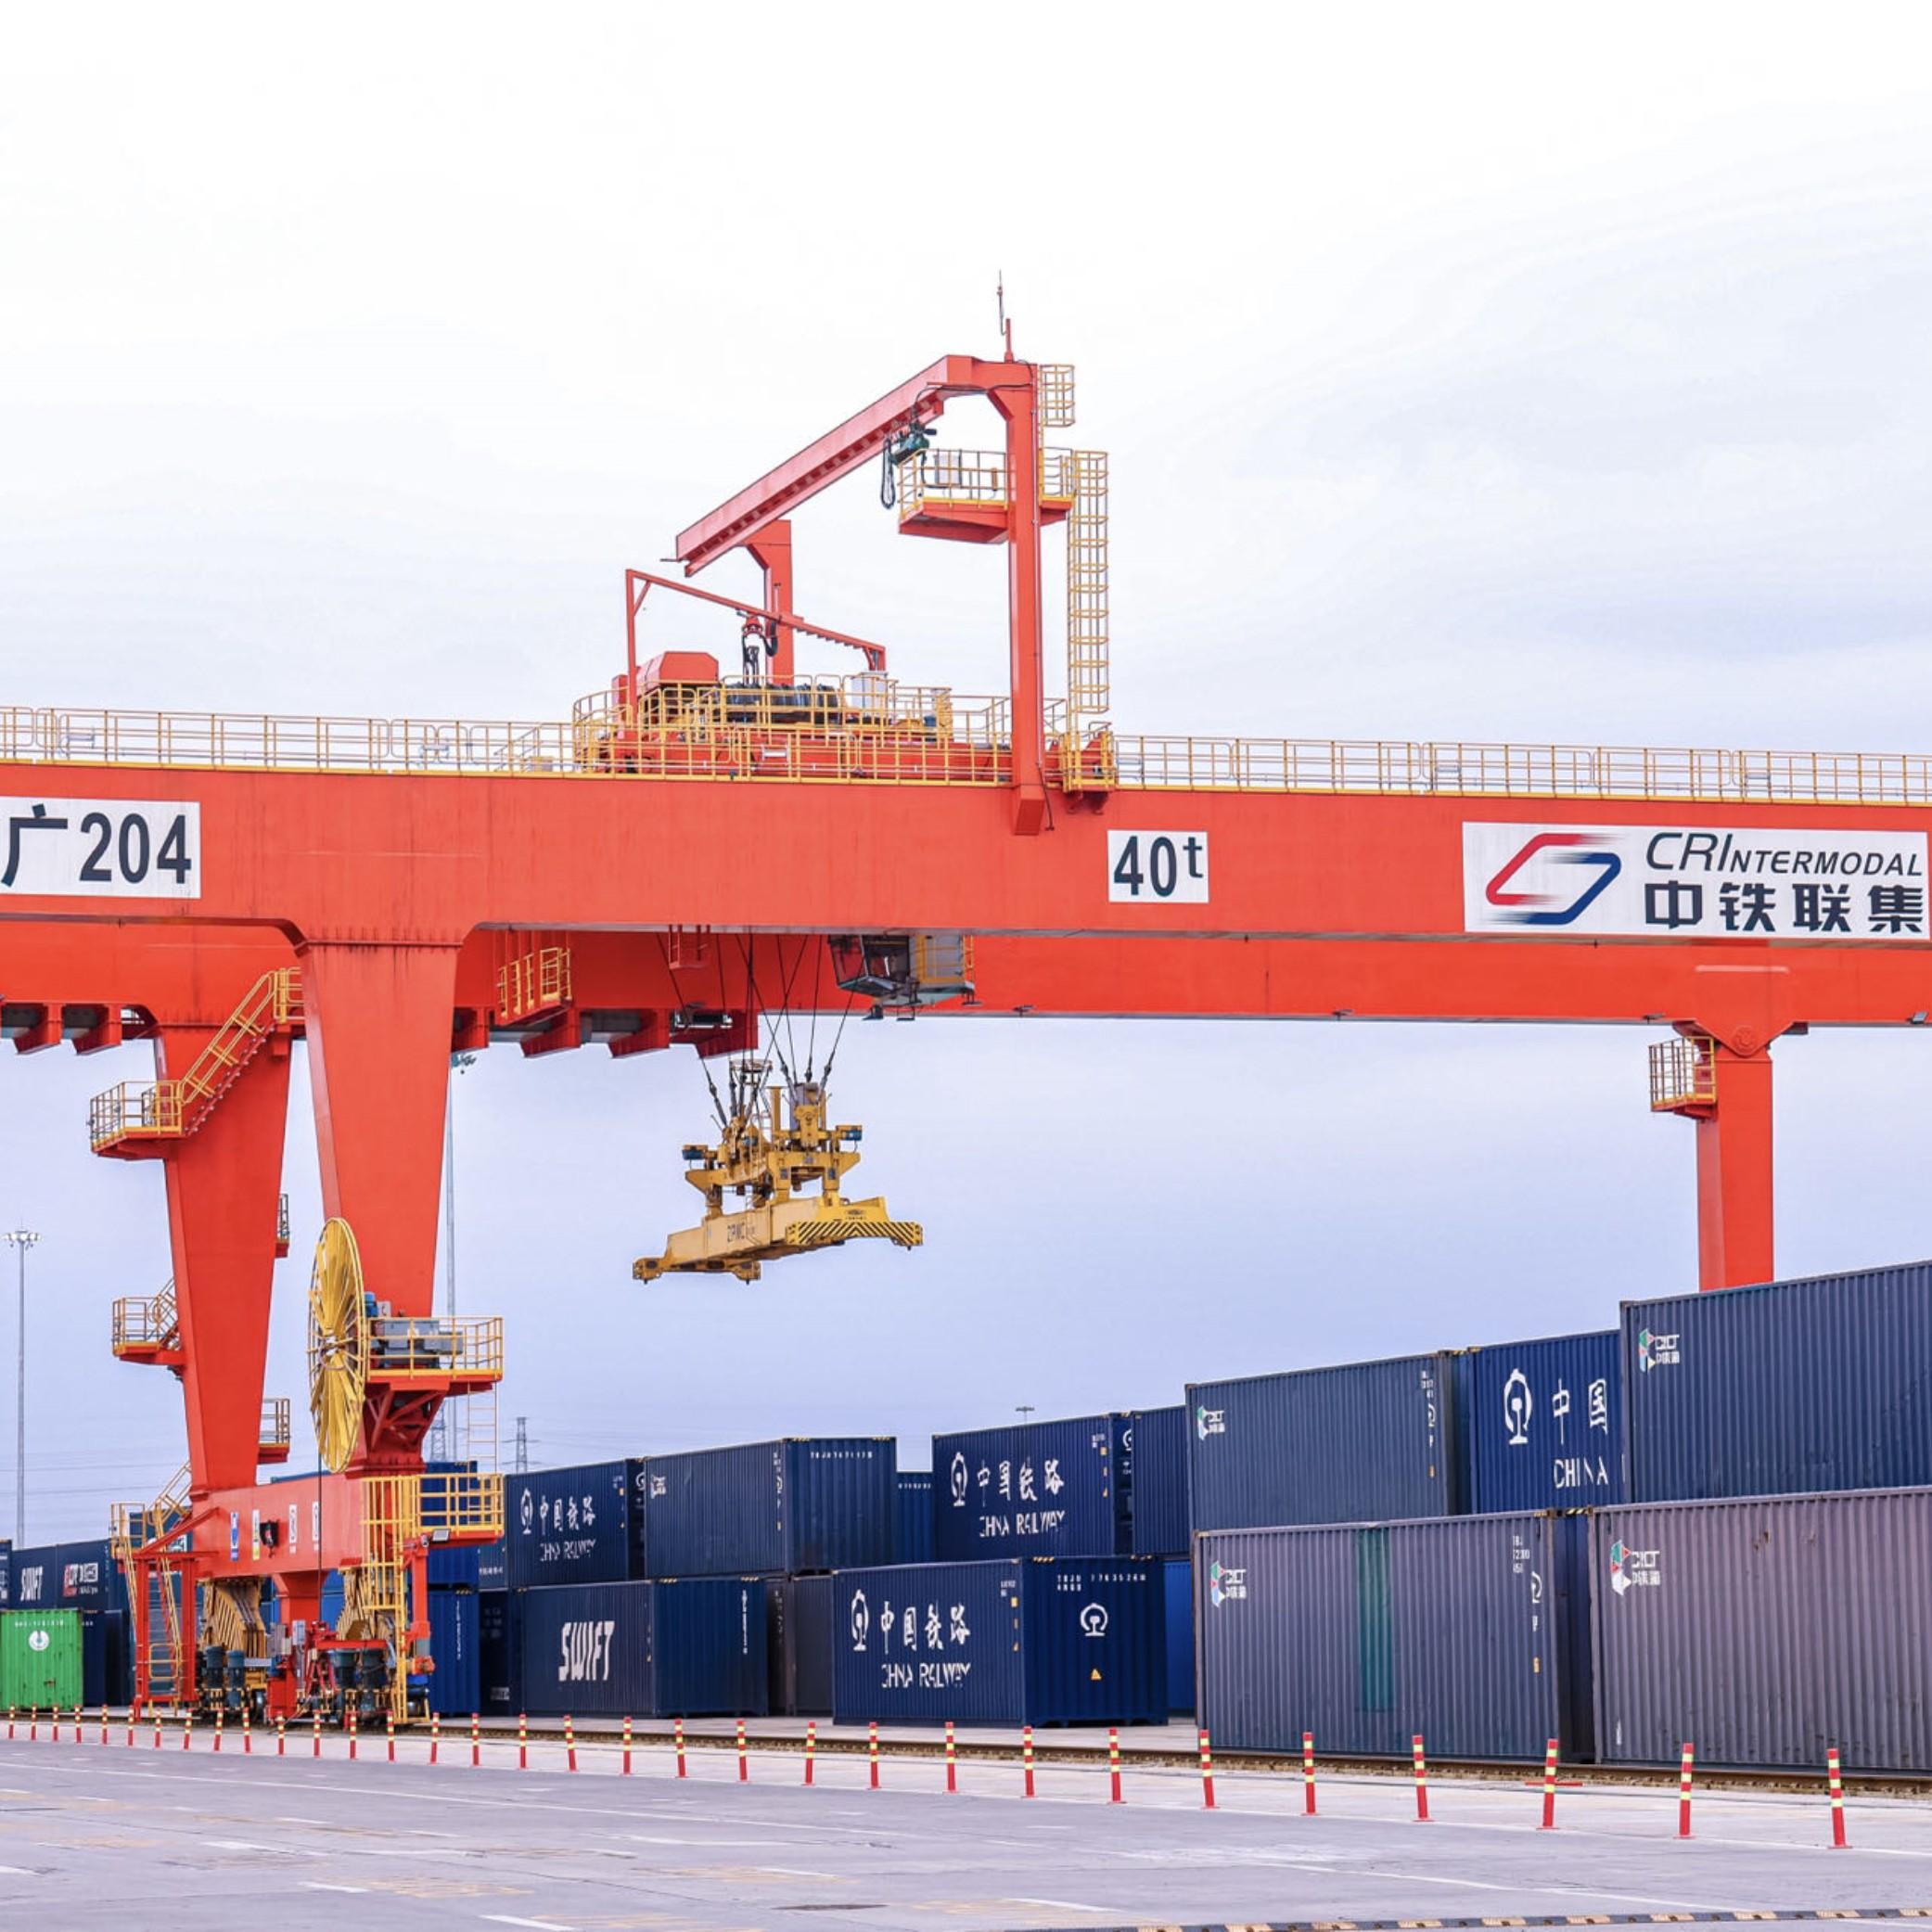 Guangzhou's Baiyun gears up for a world-class logistics cluster